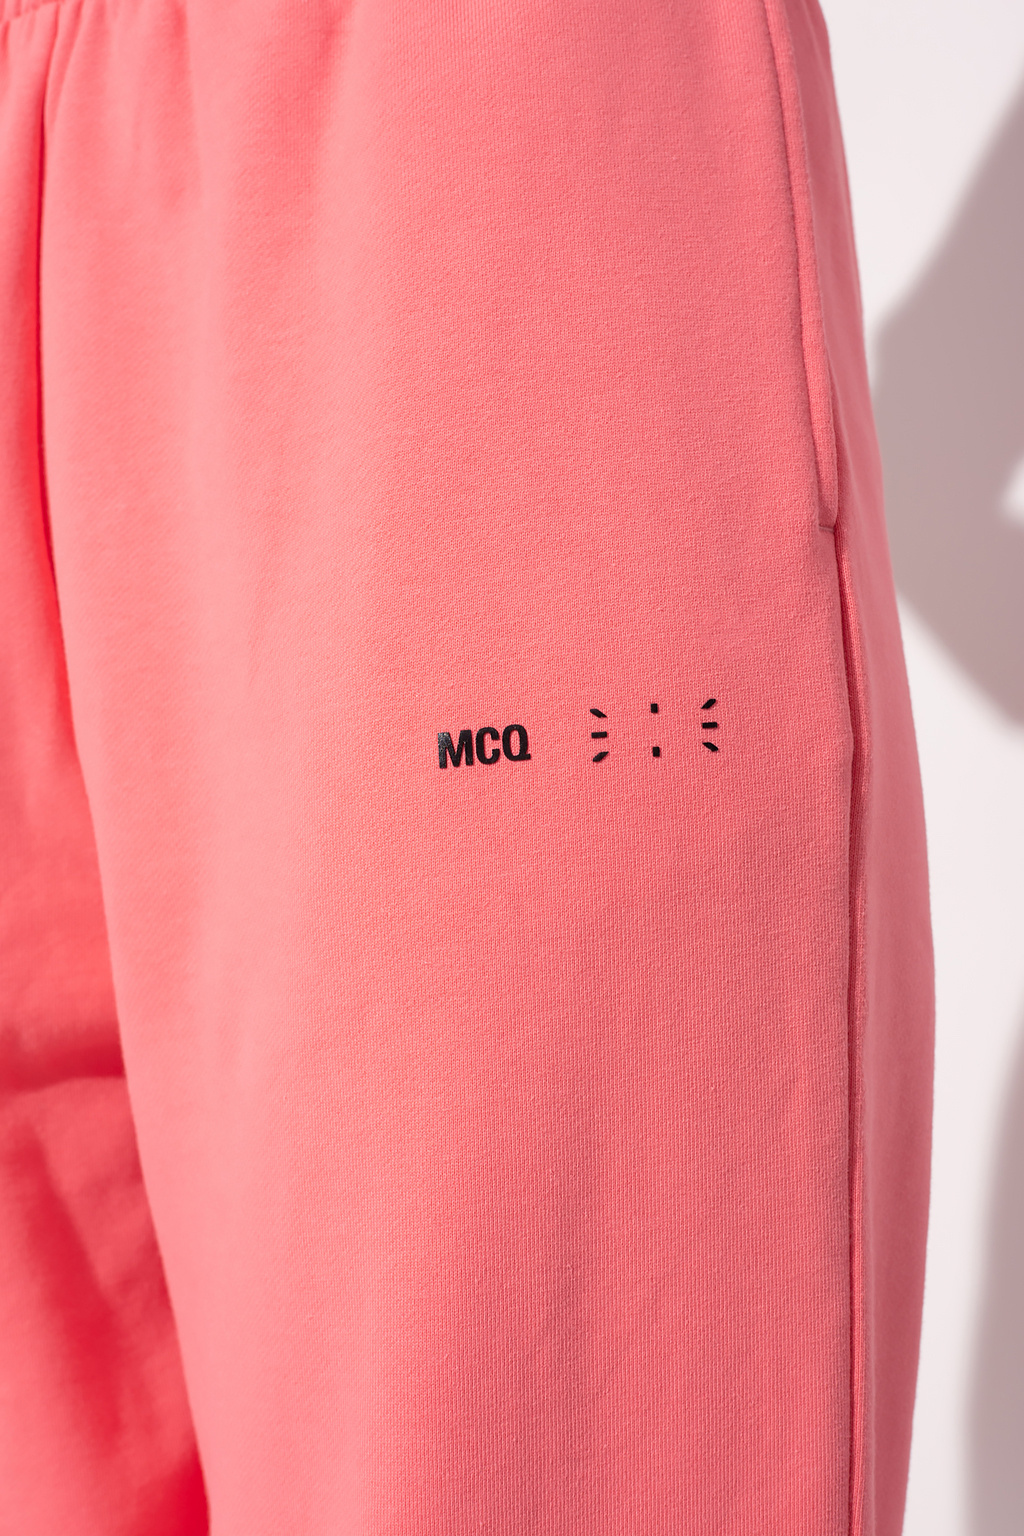 MCQ No. 0 by McQ